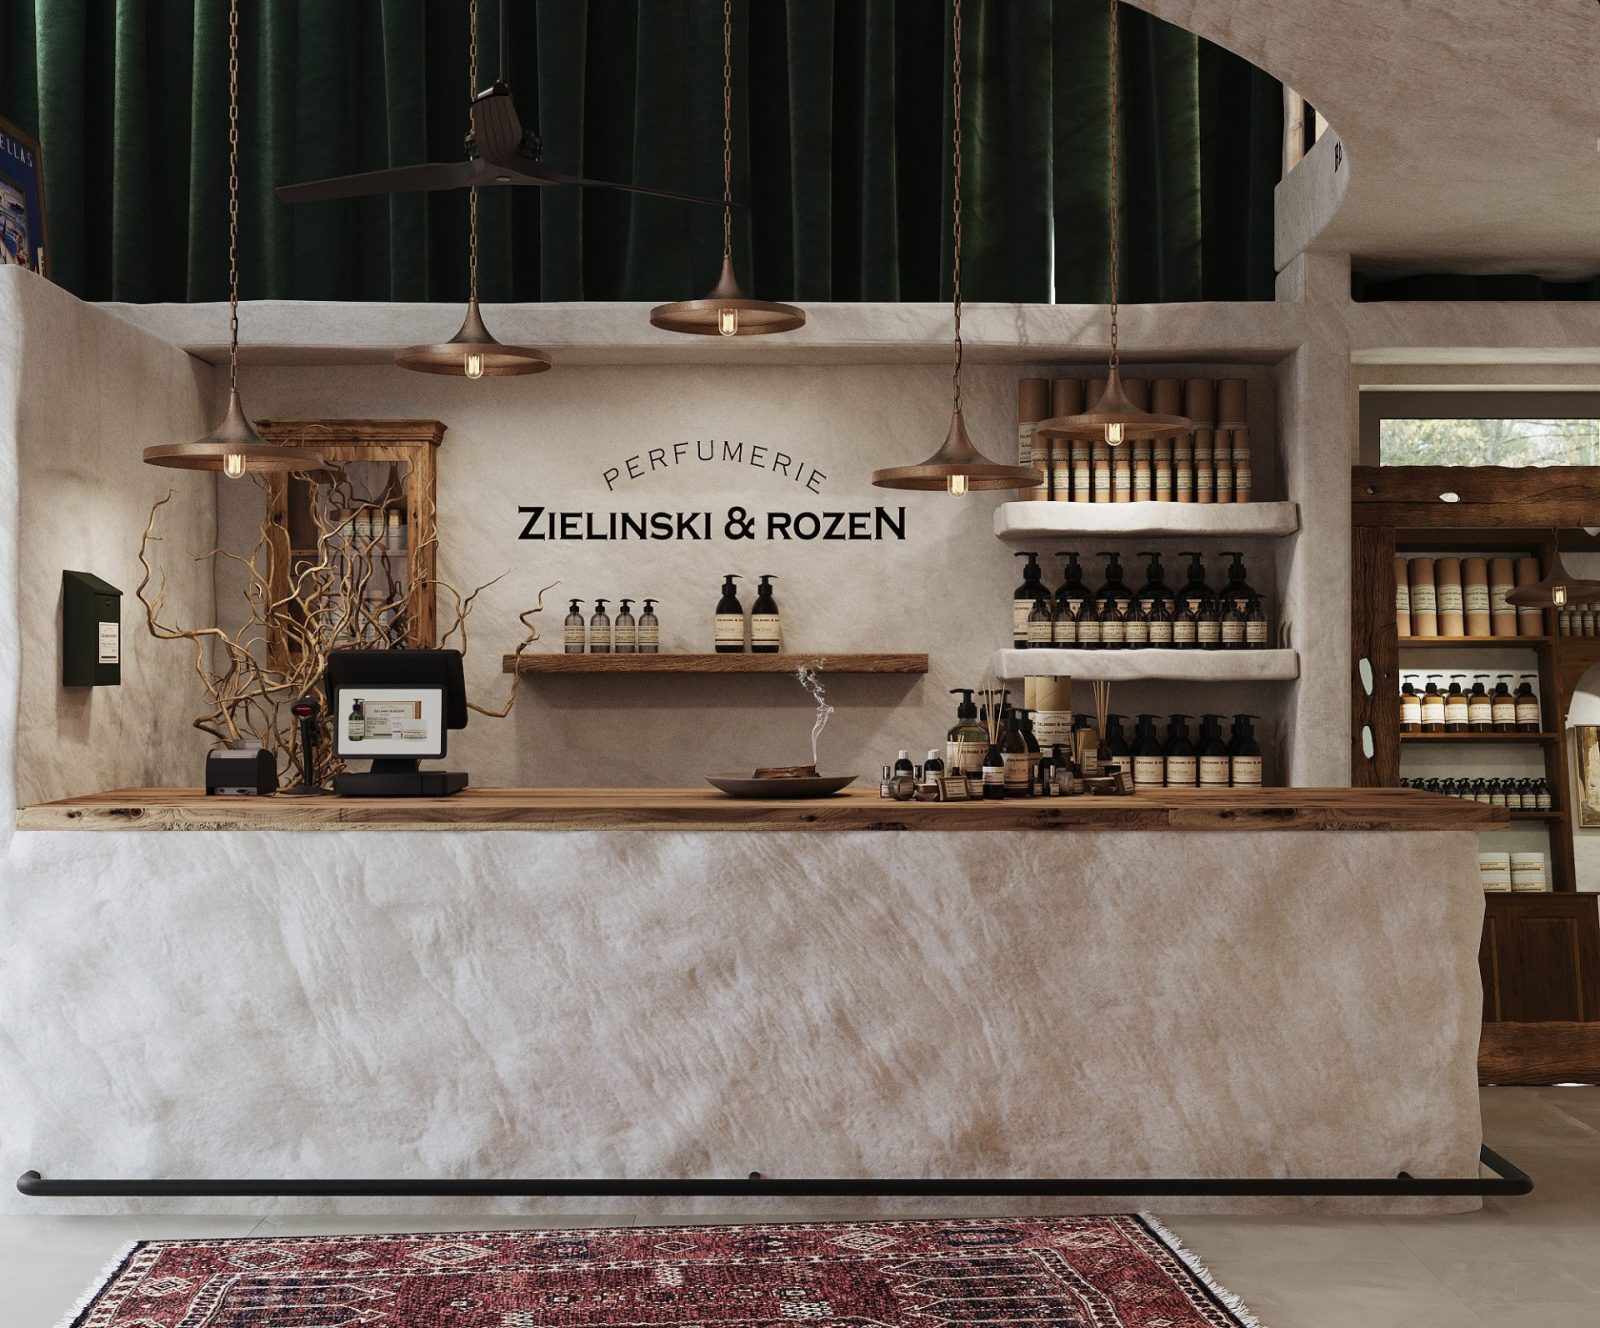 13 1 Το πρώτο κατάστημα Zielinski & Rozen στην Ελλάδα